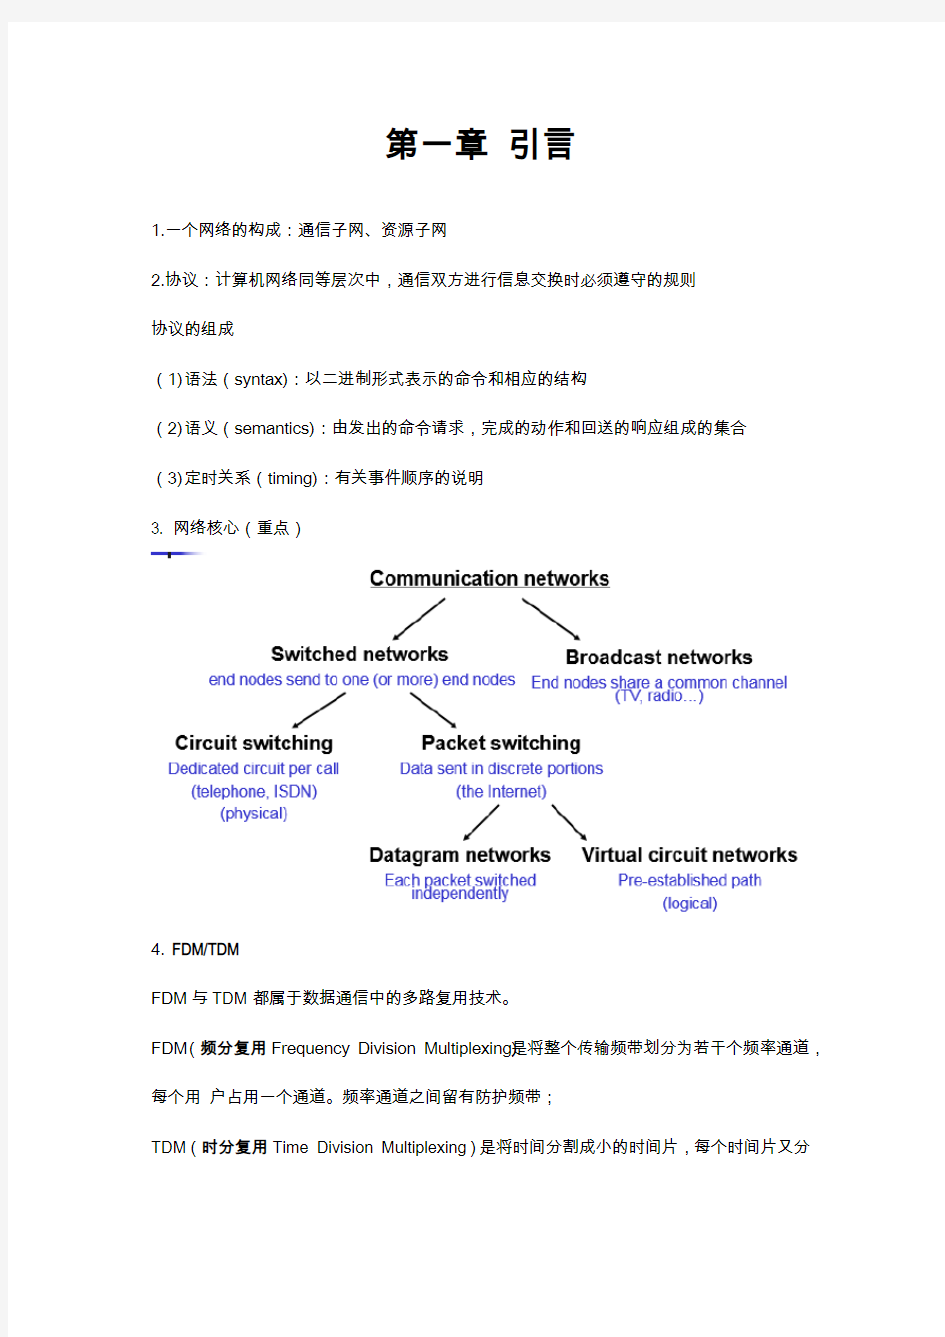 北京工商大学-软件工程专业-计算机网络期末复习第一二章